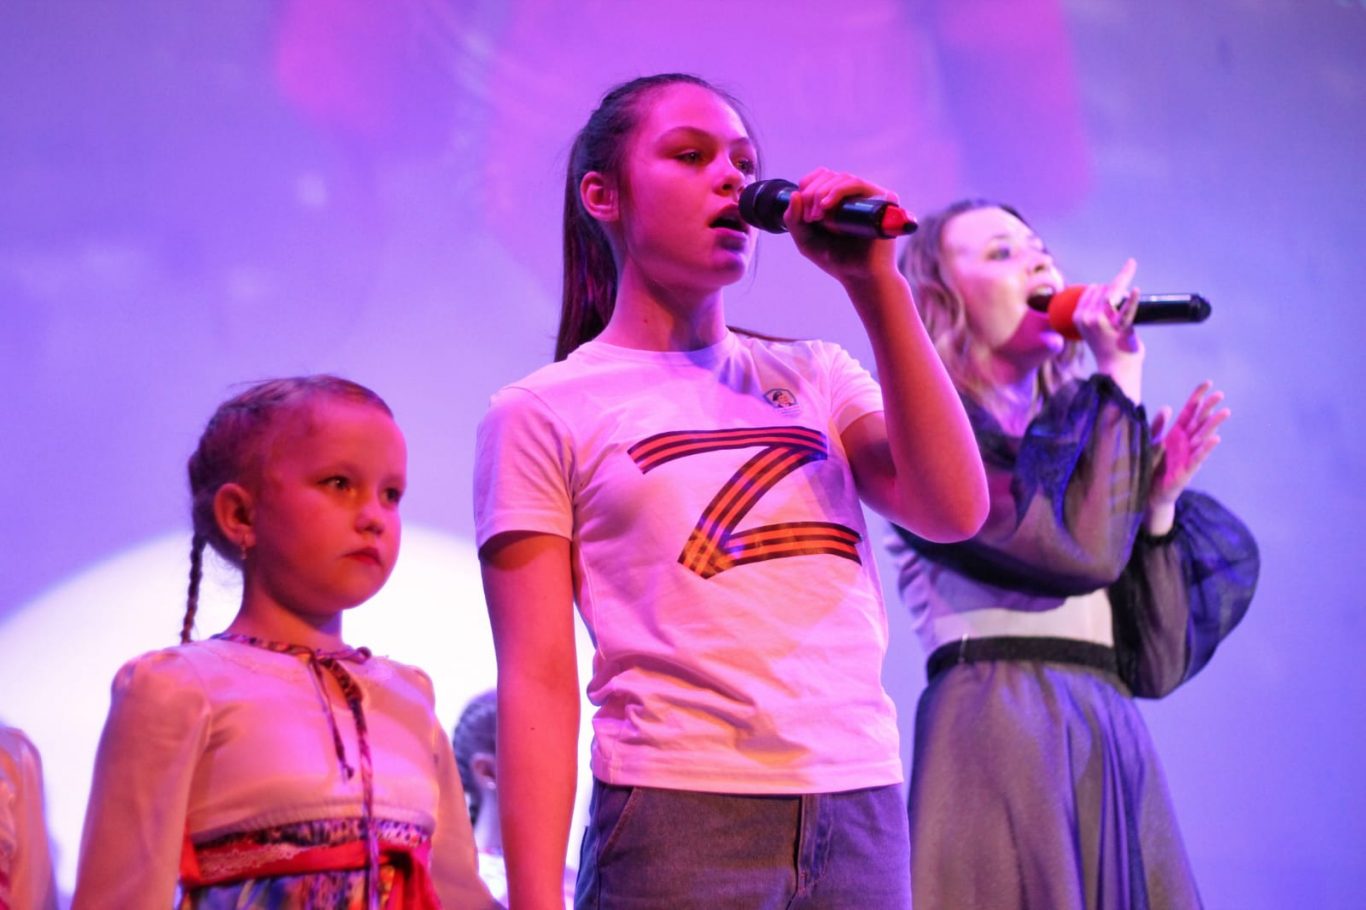 Zа мир. В Алтайском крае прошёл концерт, посвящённый детям Донбасса